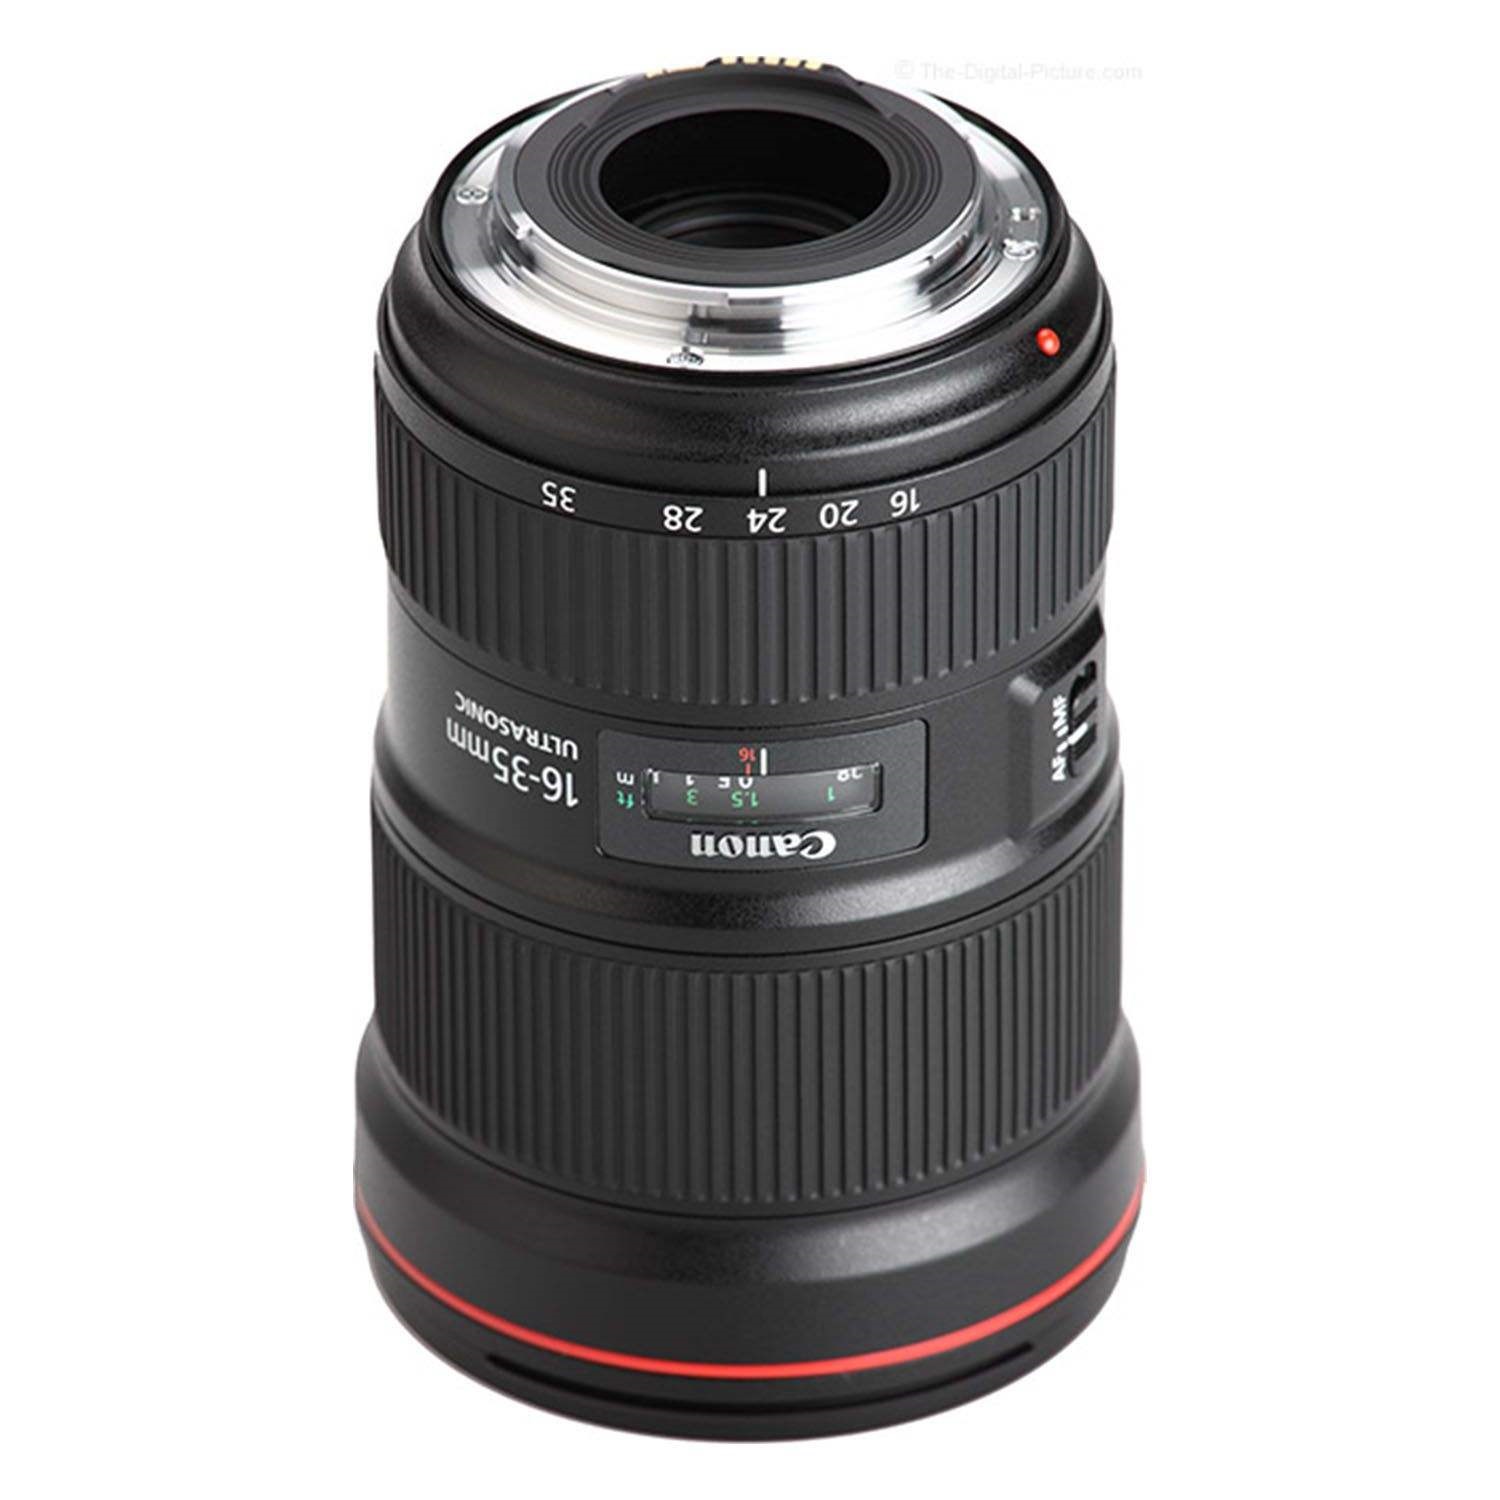 لنز کانن مدل EF 16-35mm f/2.8L III USM مناسب برای دوربین کانن